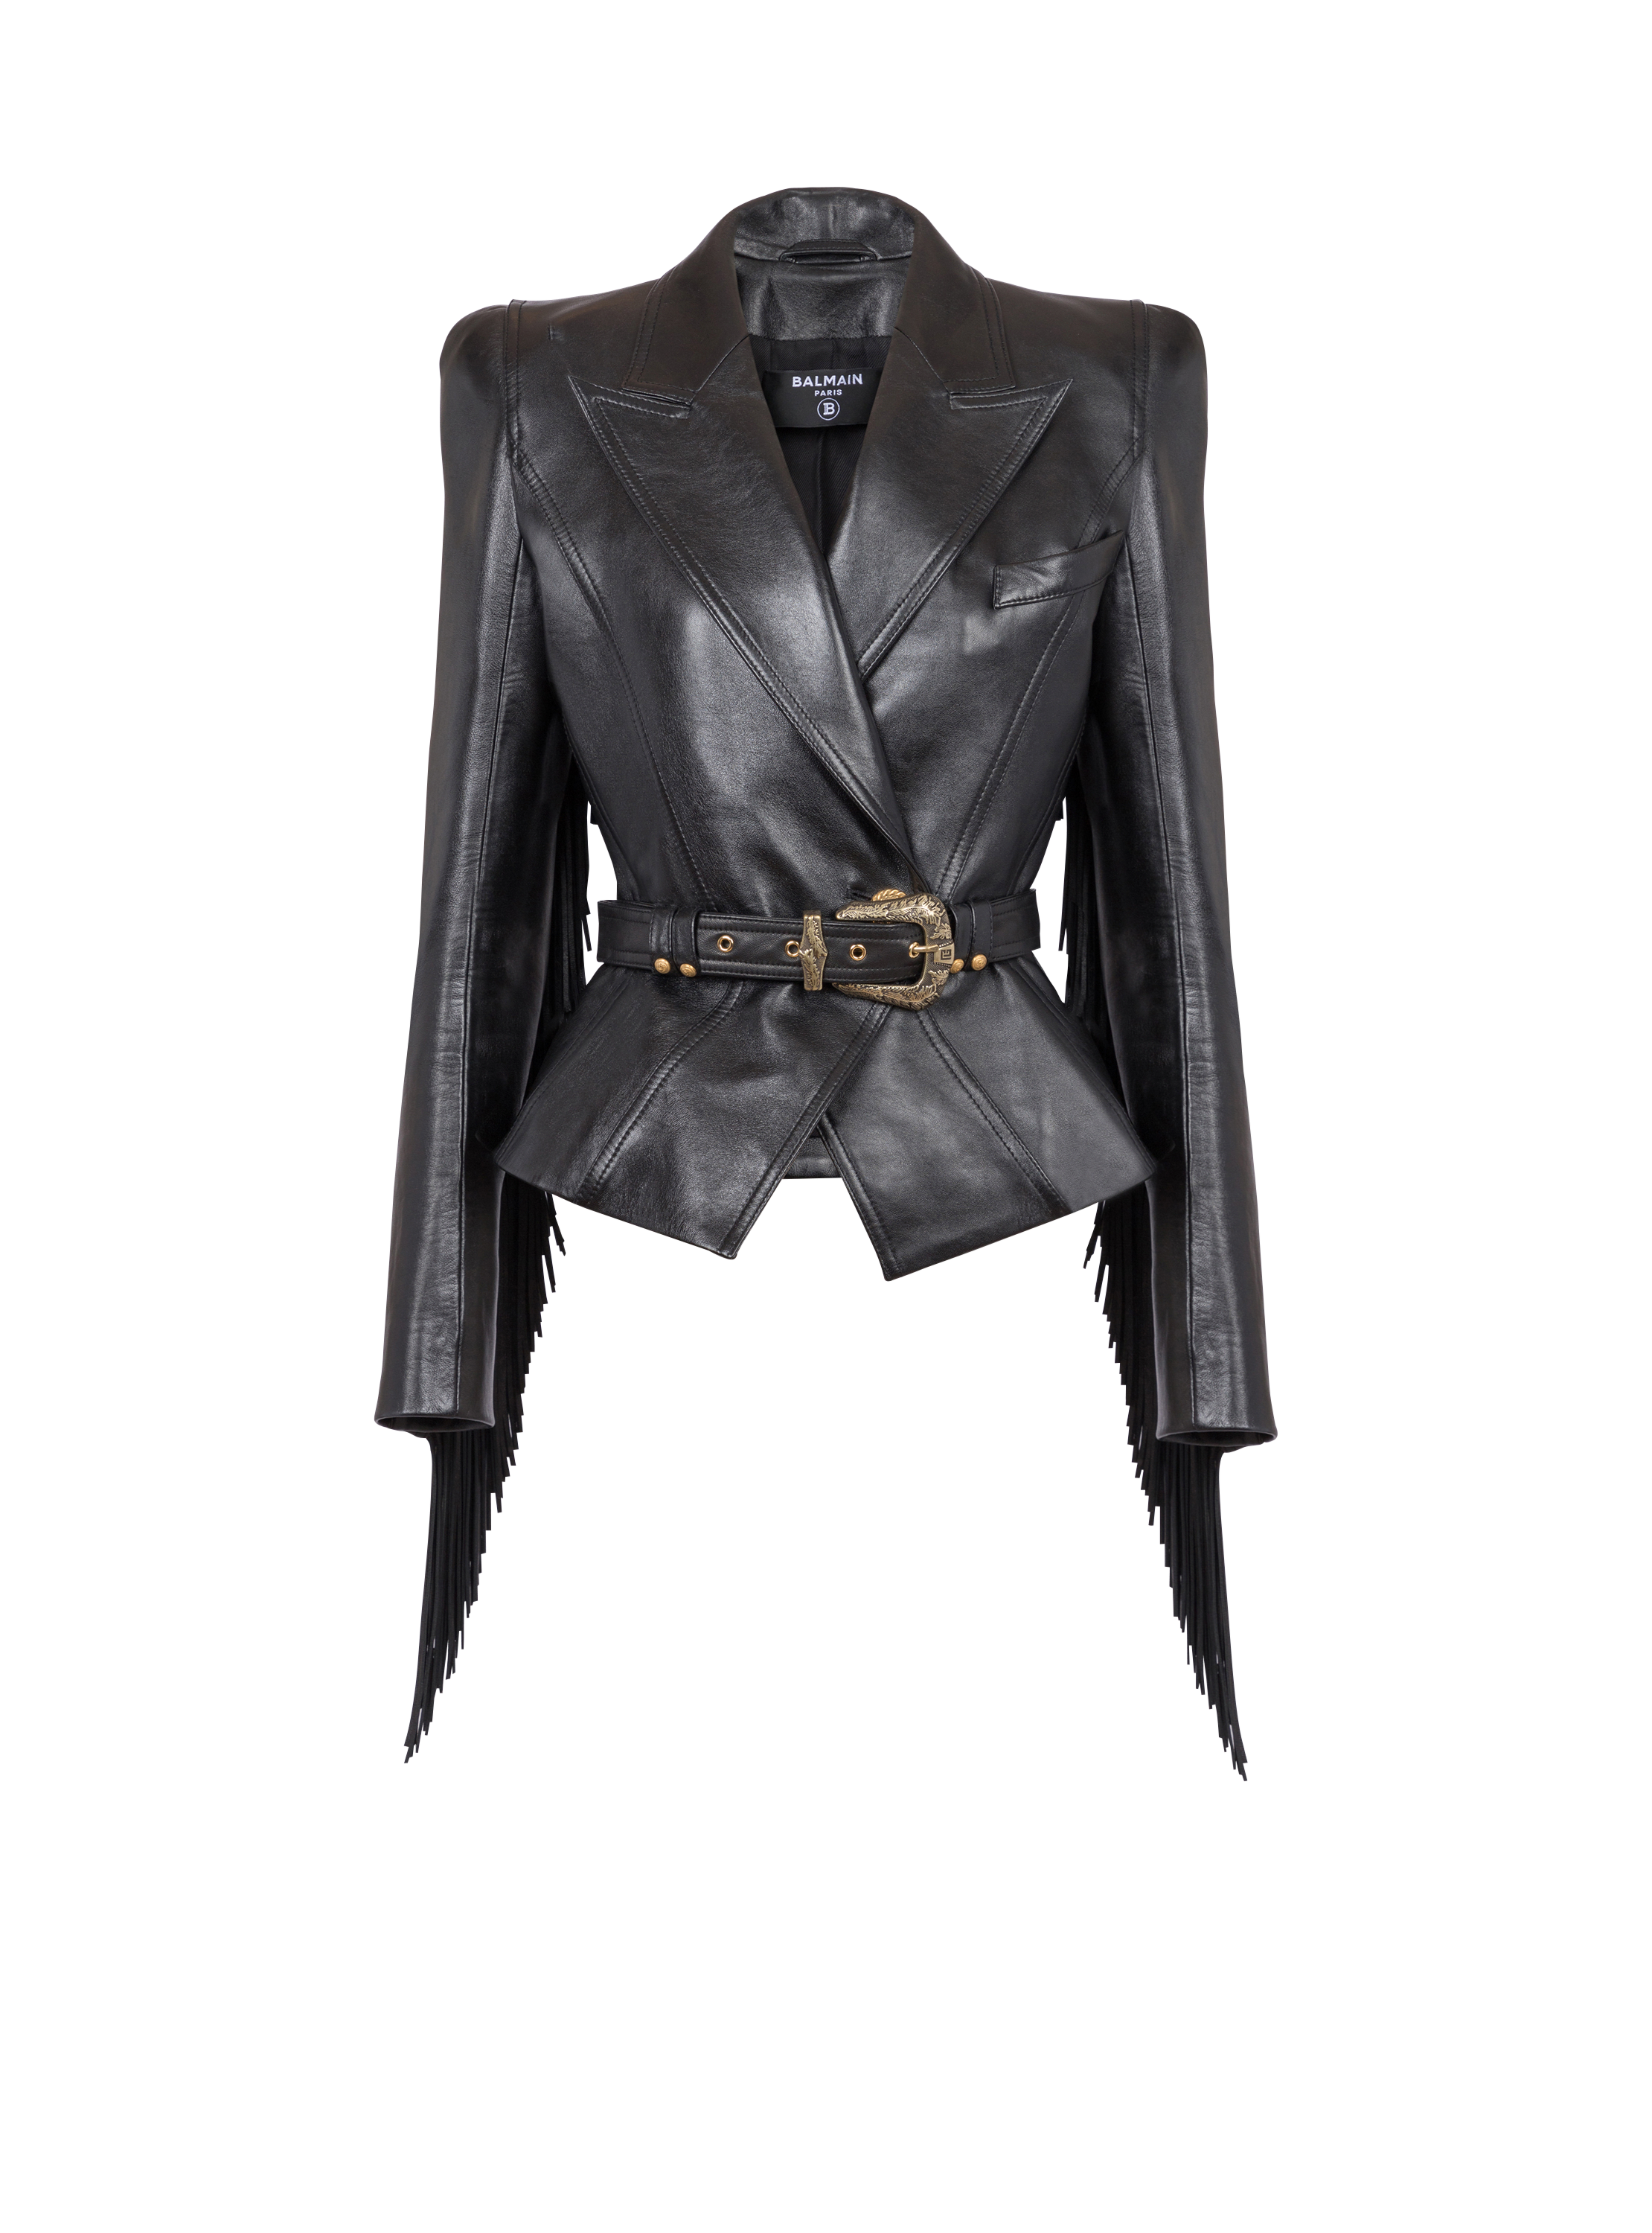 Jolie Madame fringed leather jacket, black, hi-res